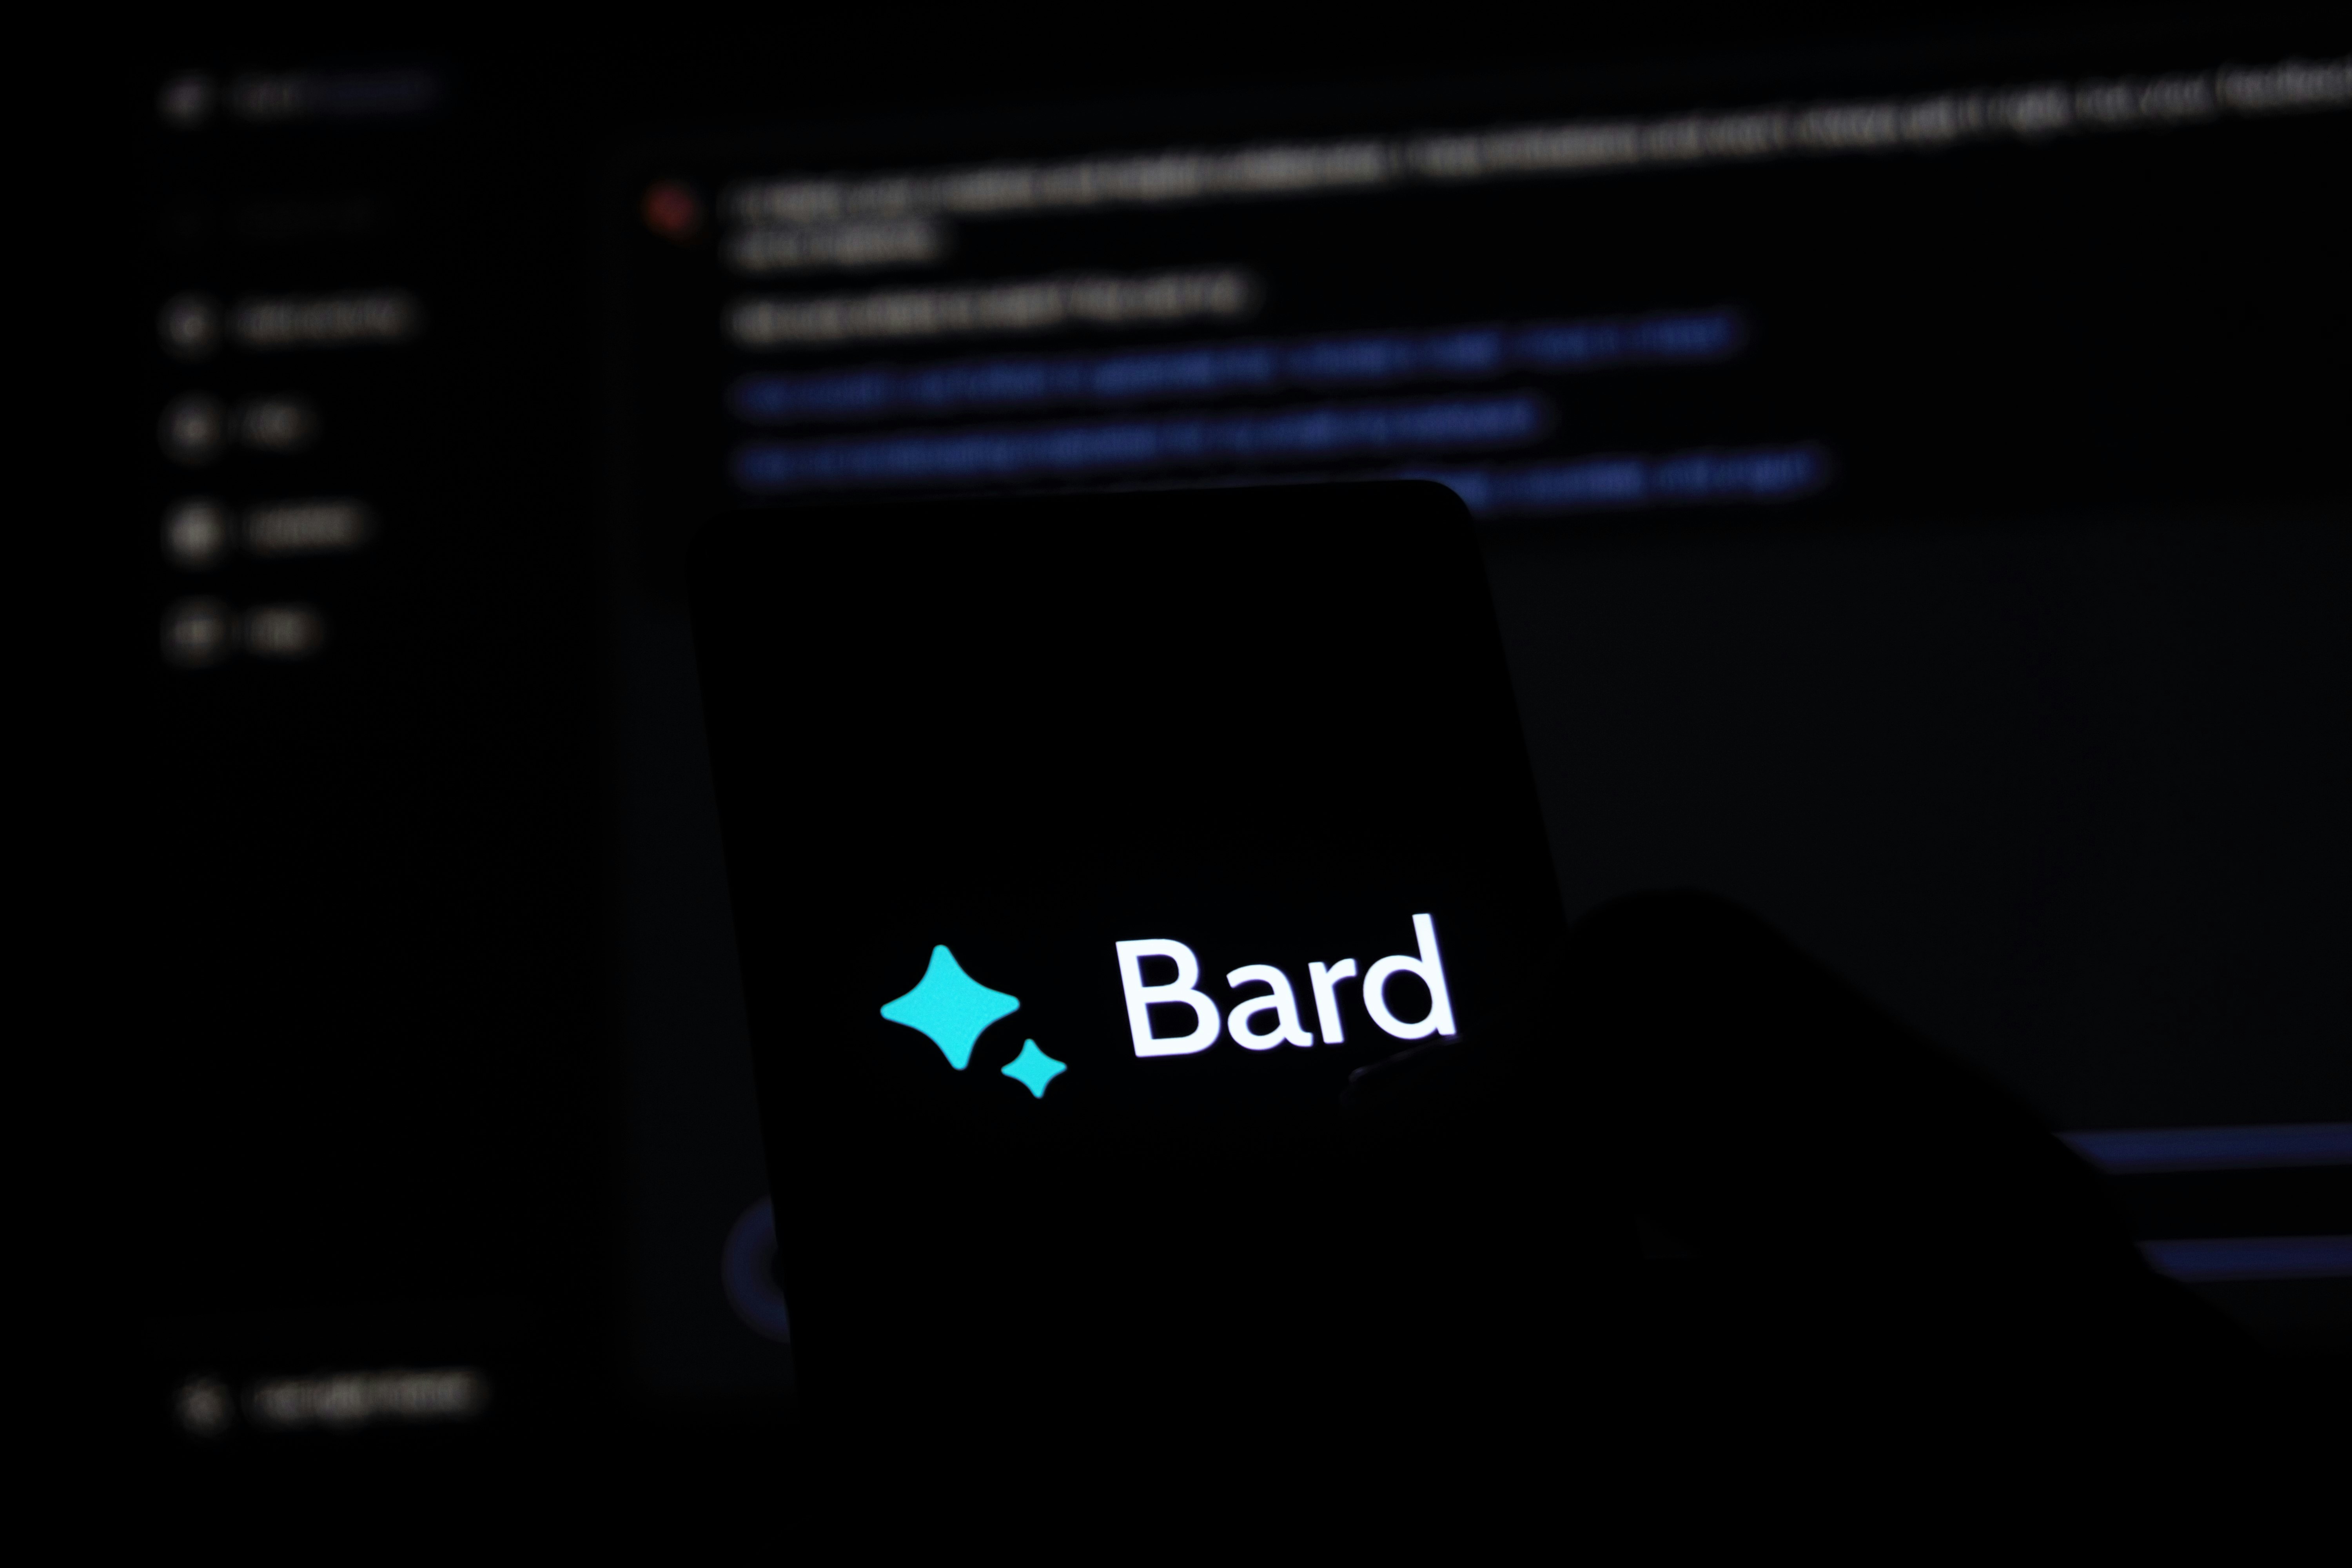 Google wijzigt de naam Bard in Gemini en lanceert een speciale app - uitgelekt